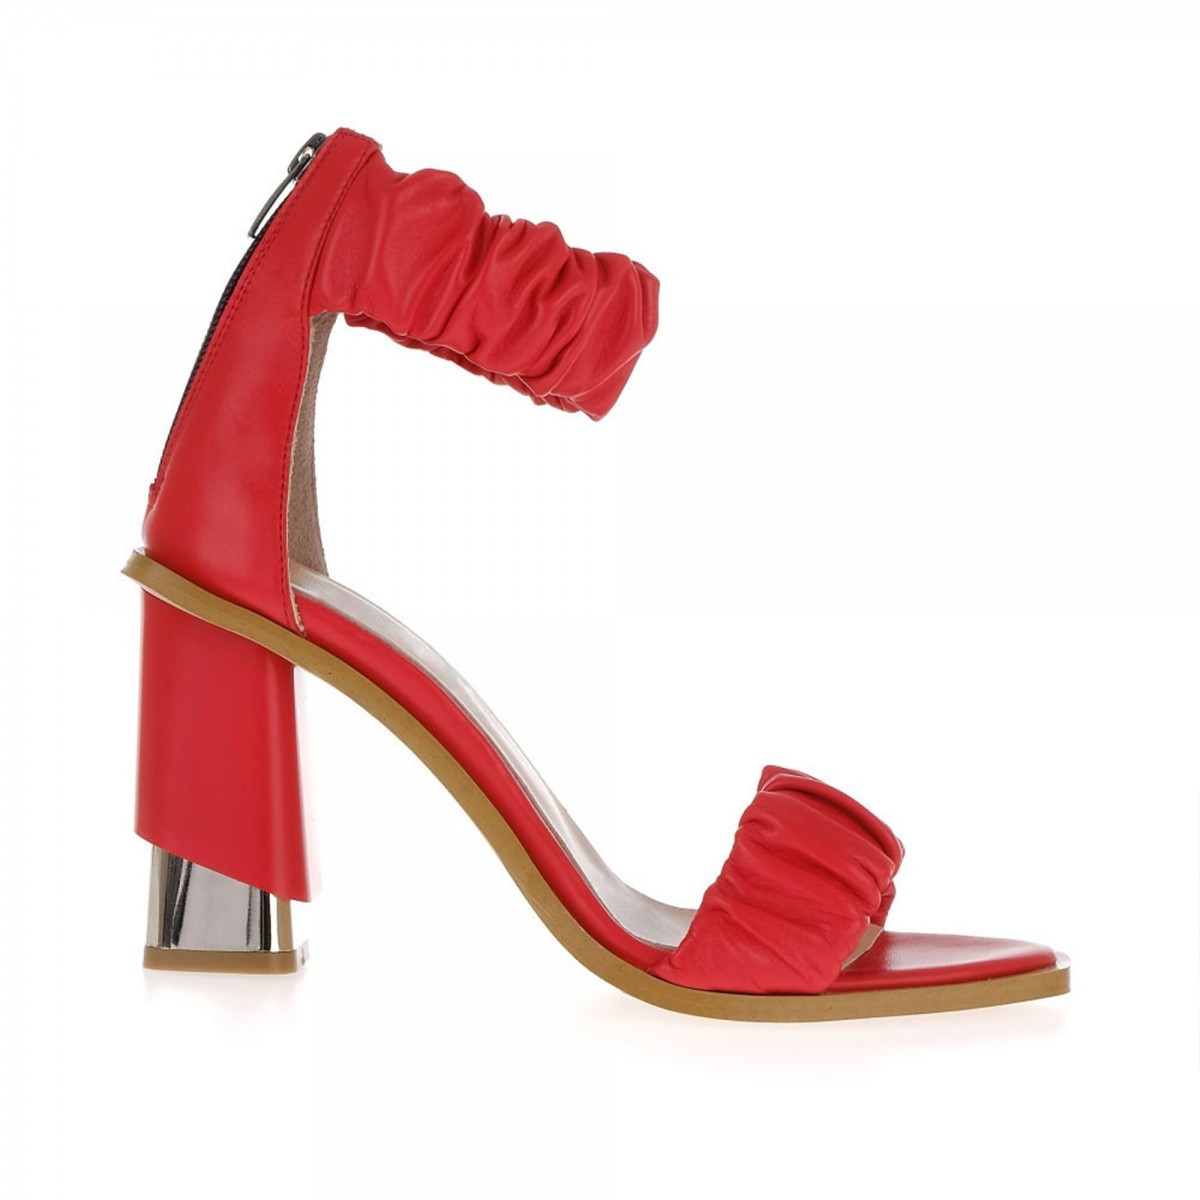 Claice Deri Topuklu Ayakkabı Kırmızı